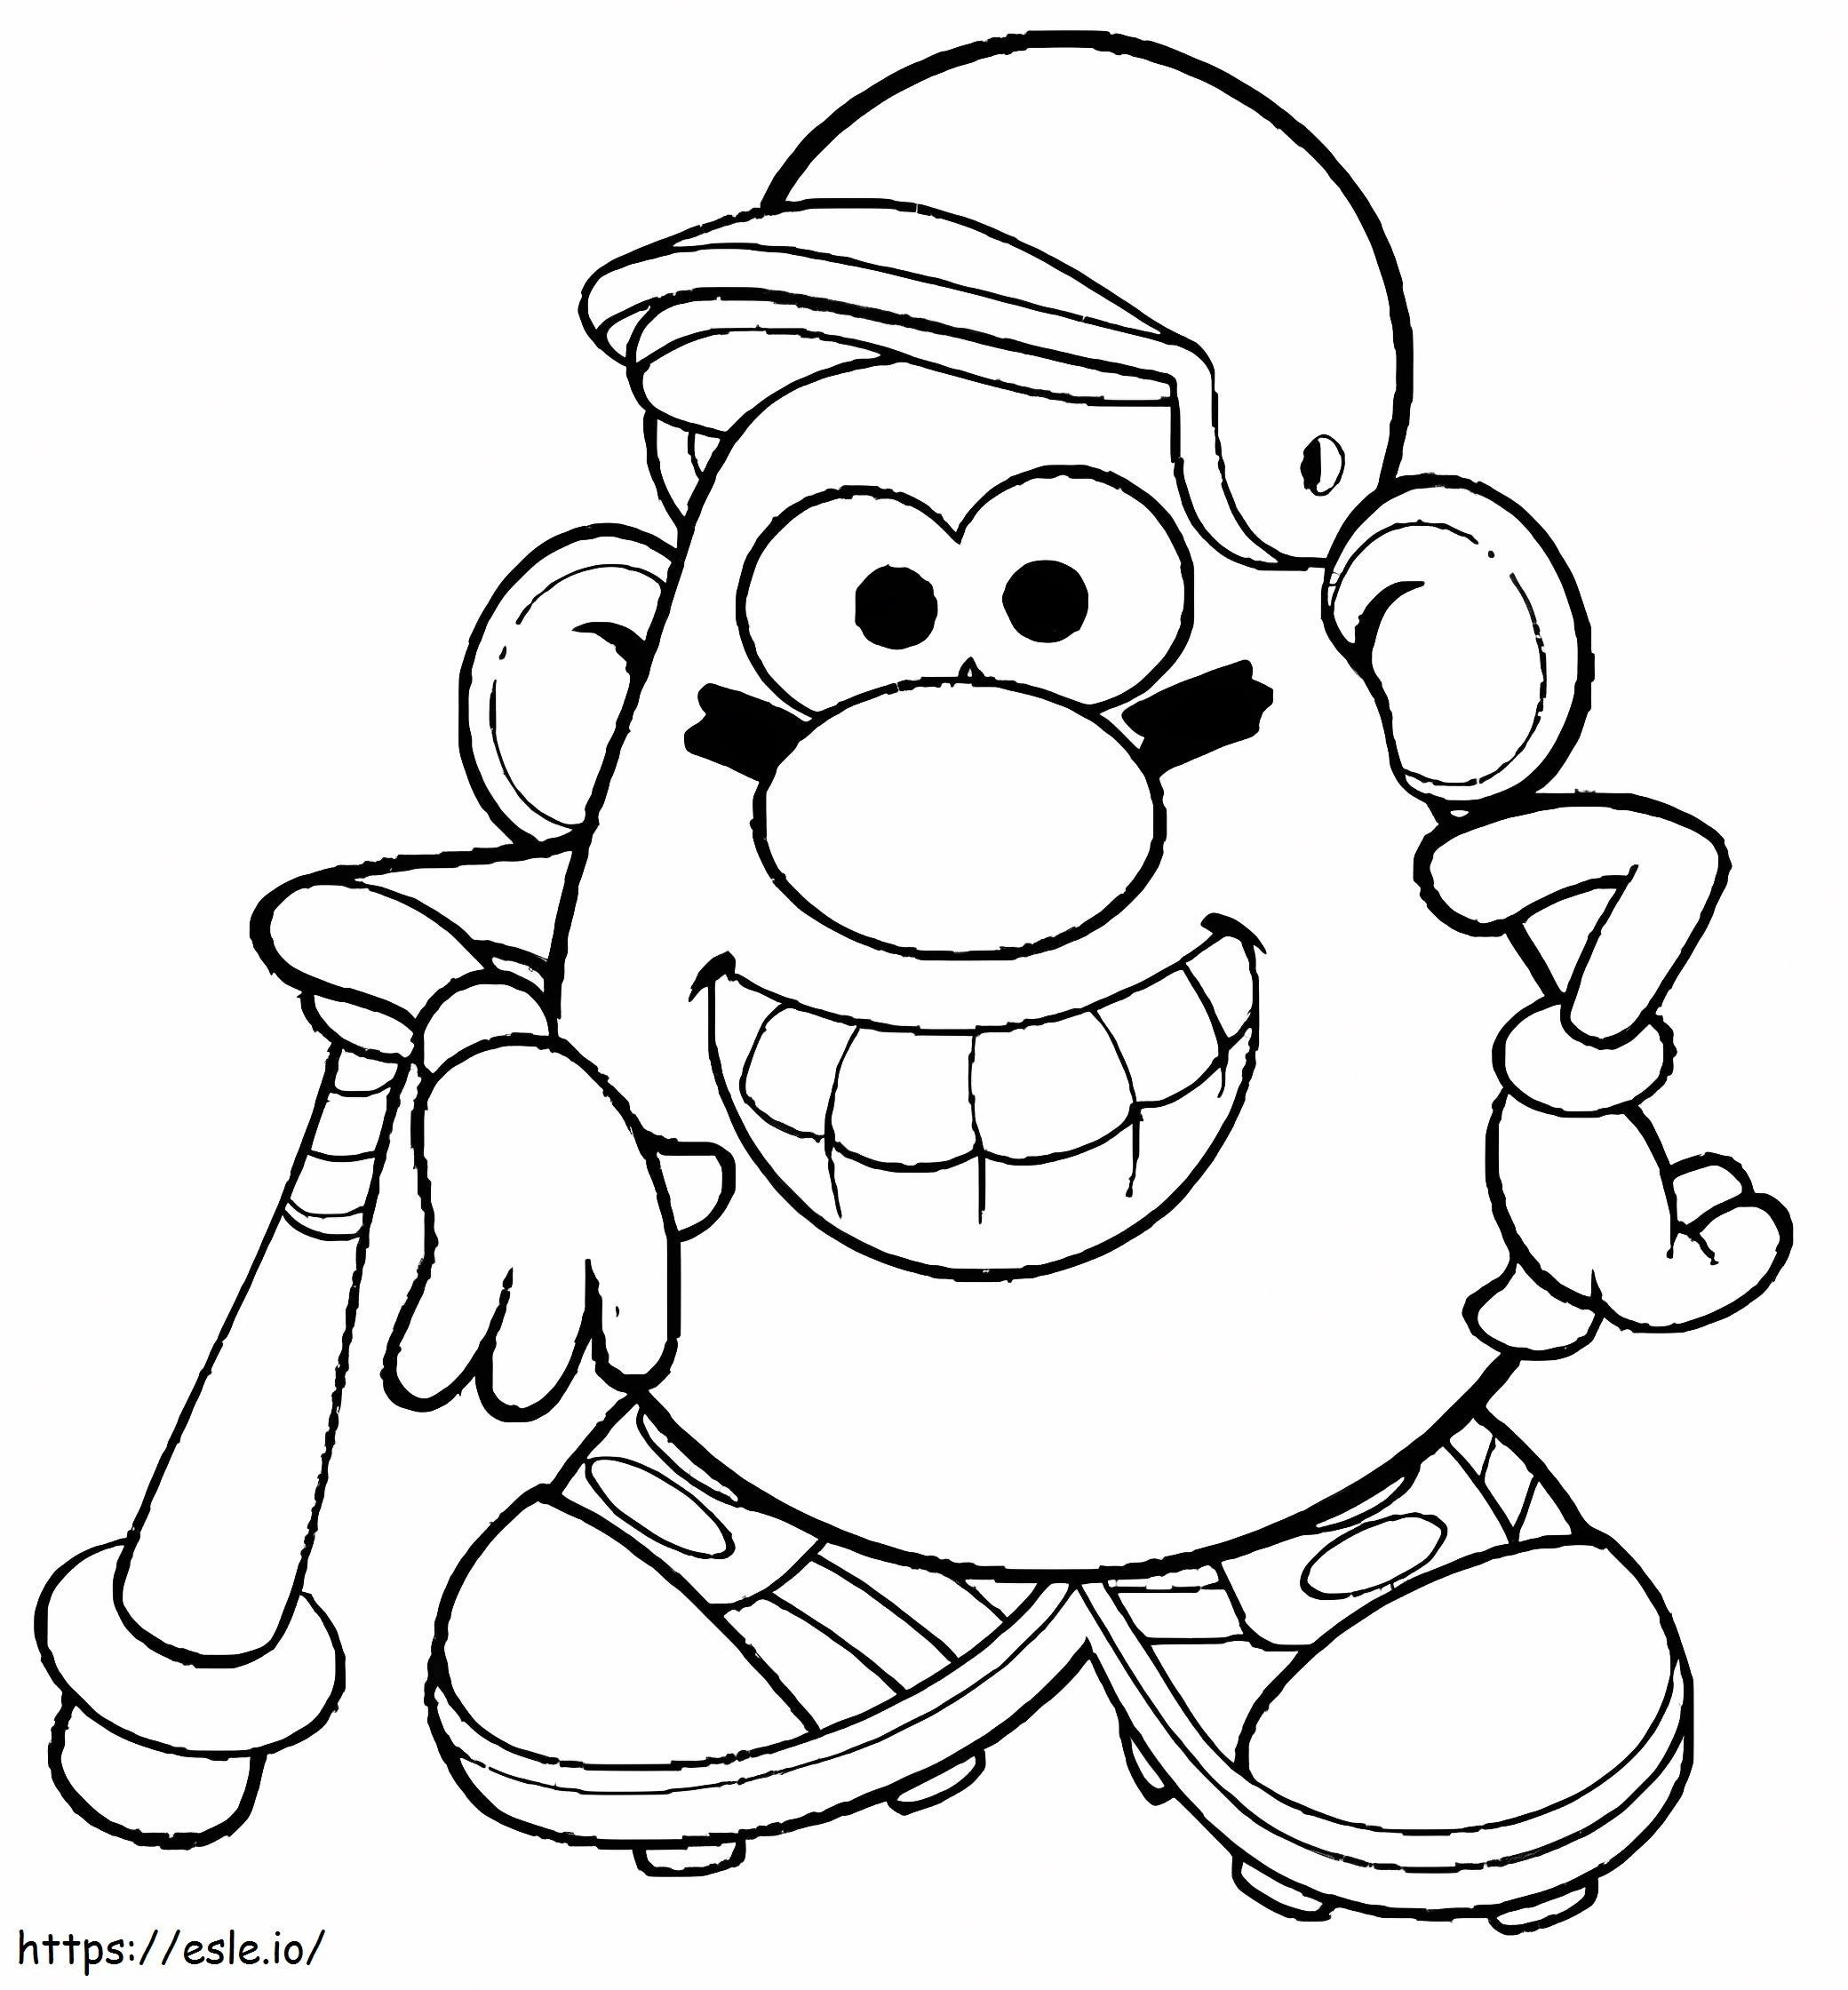 Coloriage M. Potato Head jouant au baseball à imprimer dessin